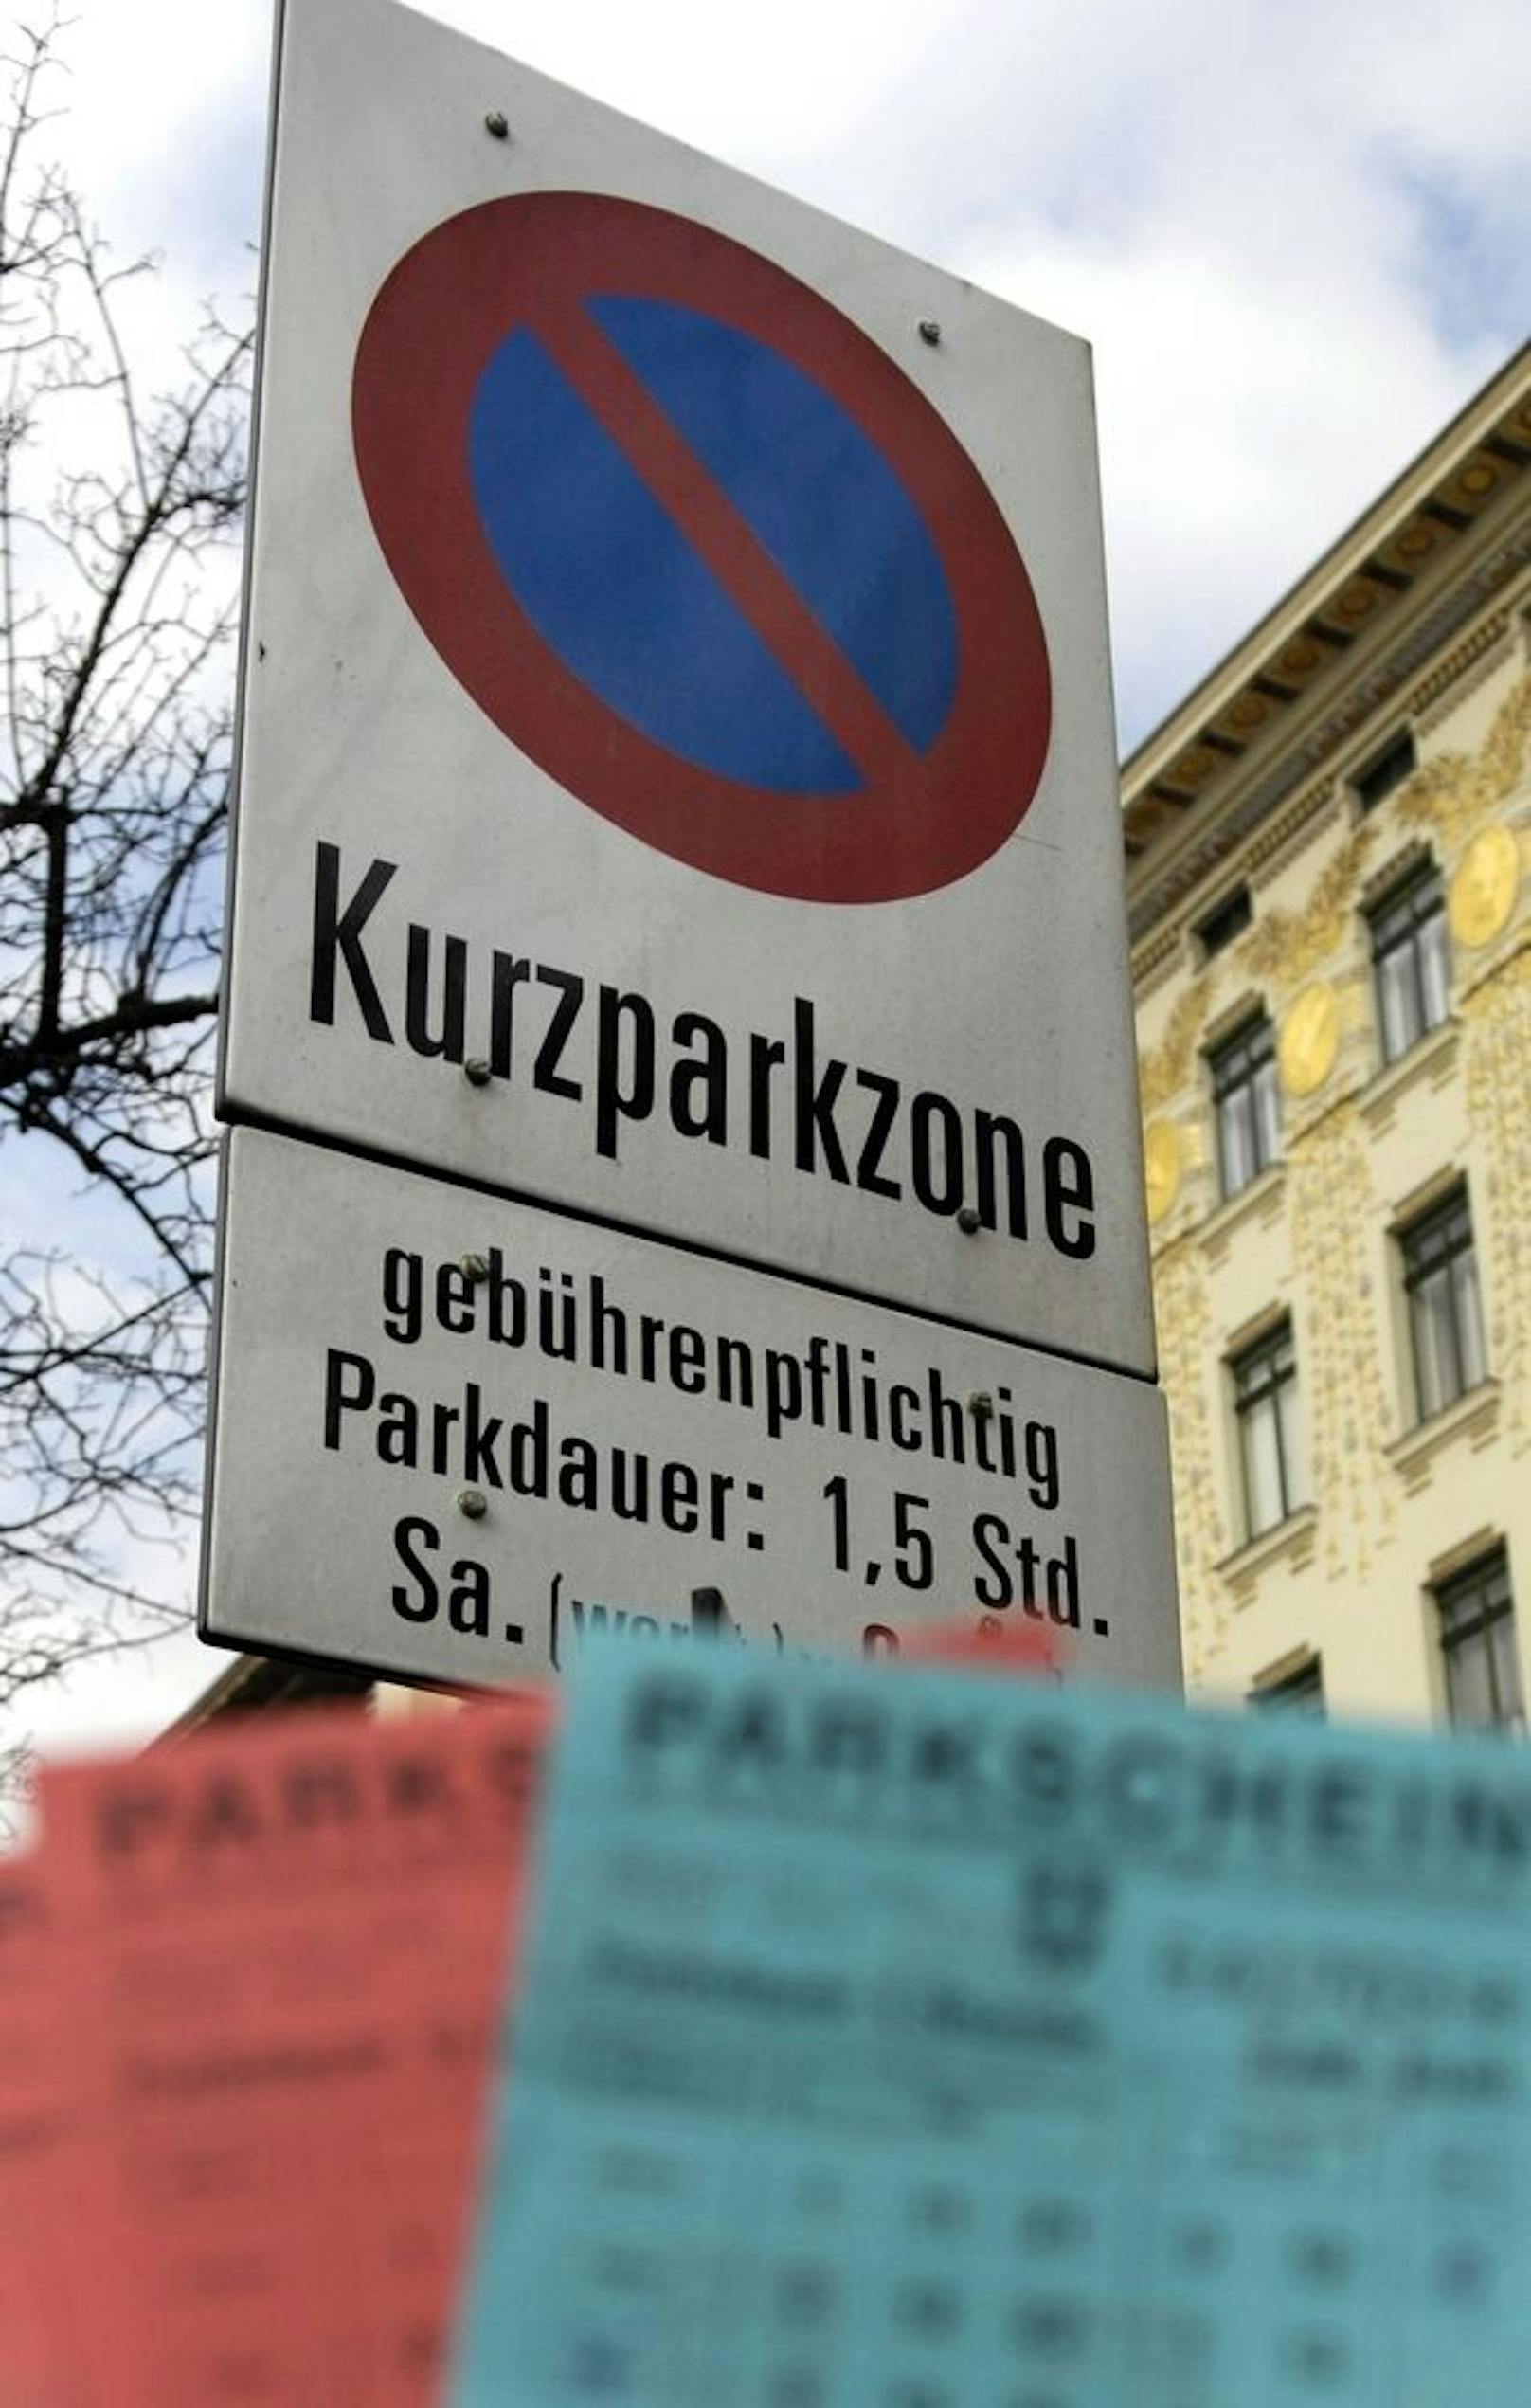 Ab 1. März 2022 wird (fast) ganz Wien zur Kurzparkzone. Die Finanzmittel für die dafür nötigen Schilder und Zusatztafeln werden morgen im Wiener Gemeinderat beschlossen.